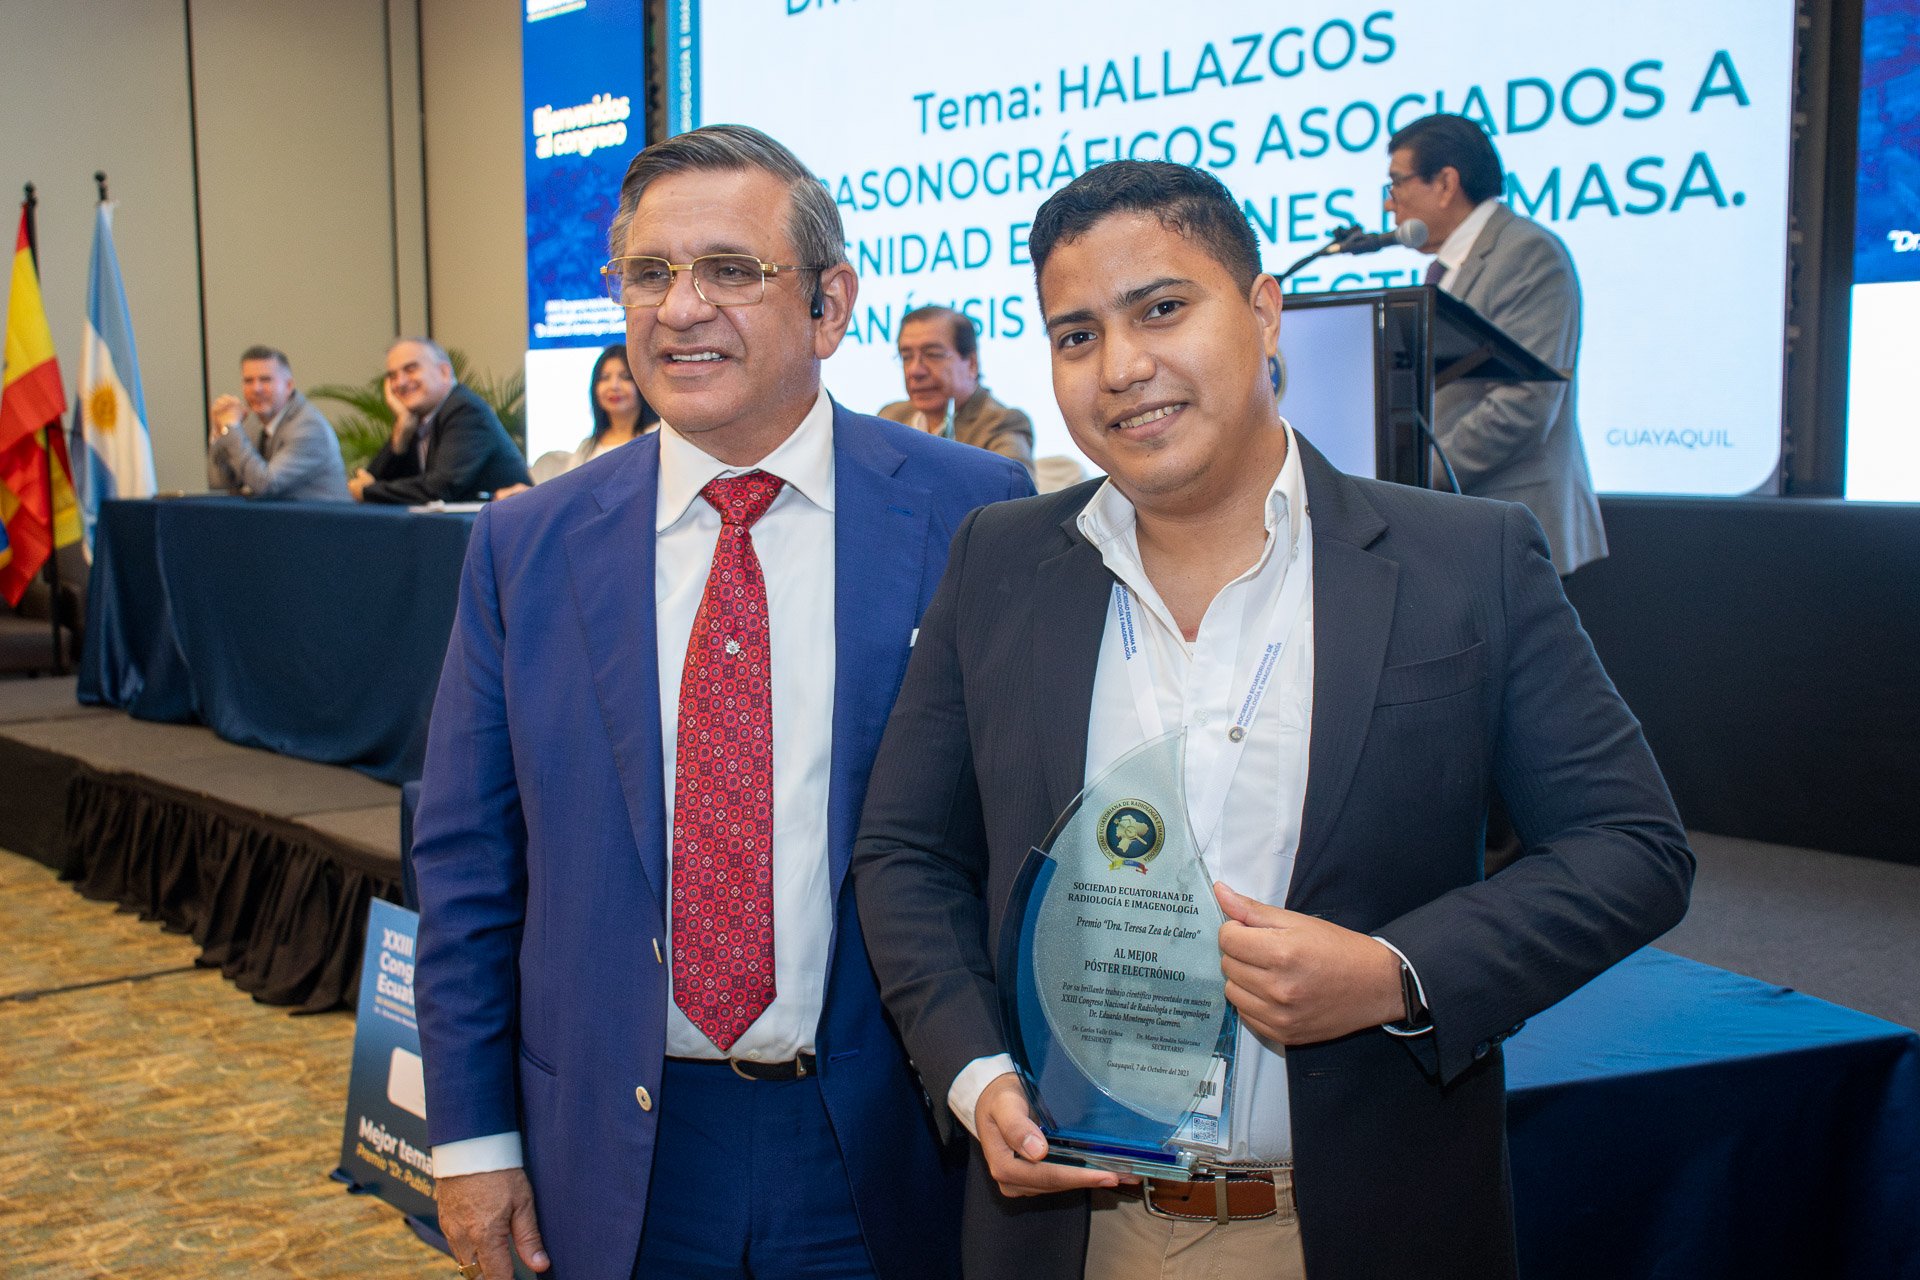  El Doctor Galo Calero con el ganador del premio al mejor poster electrónico del XXIII Congreso de Radiología e Imagenología 